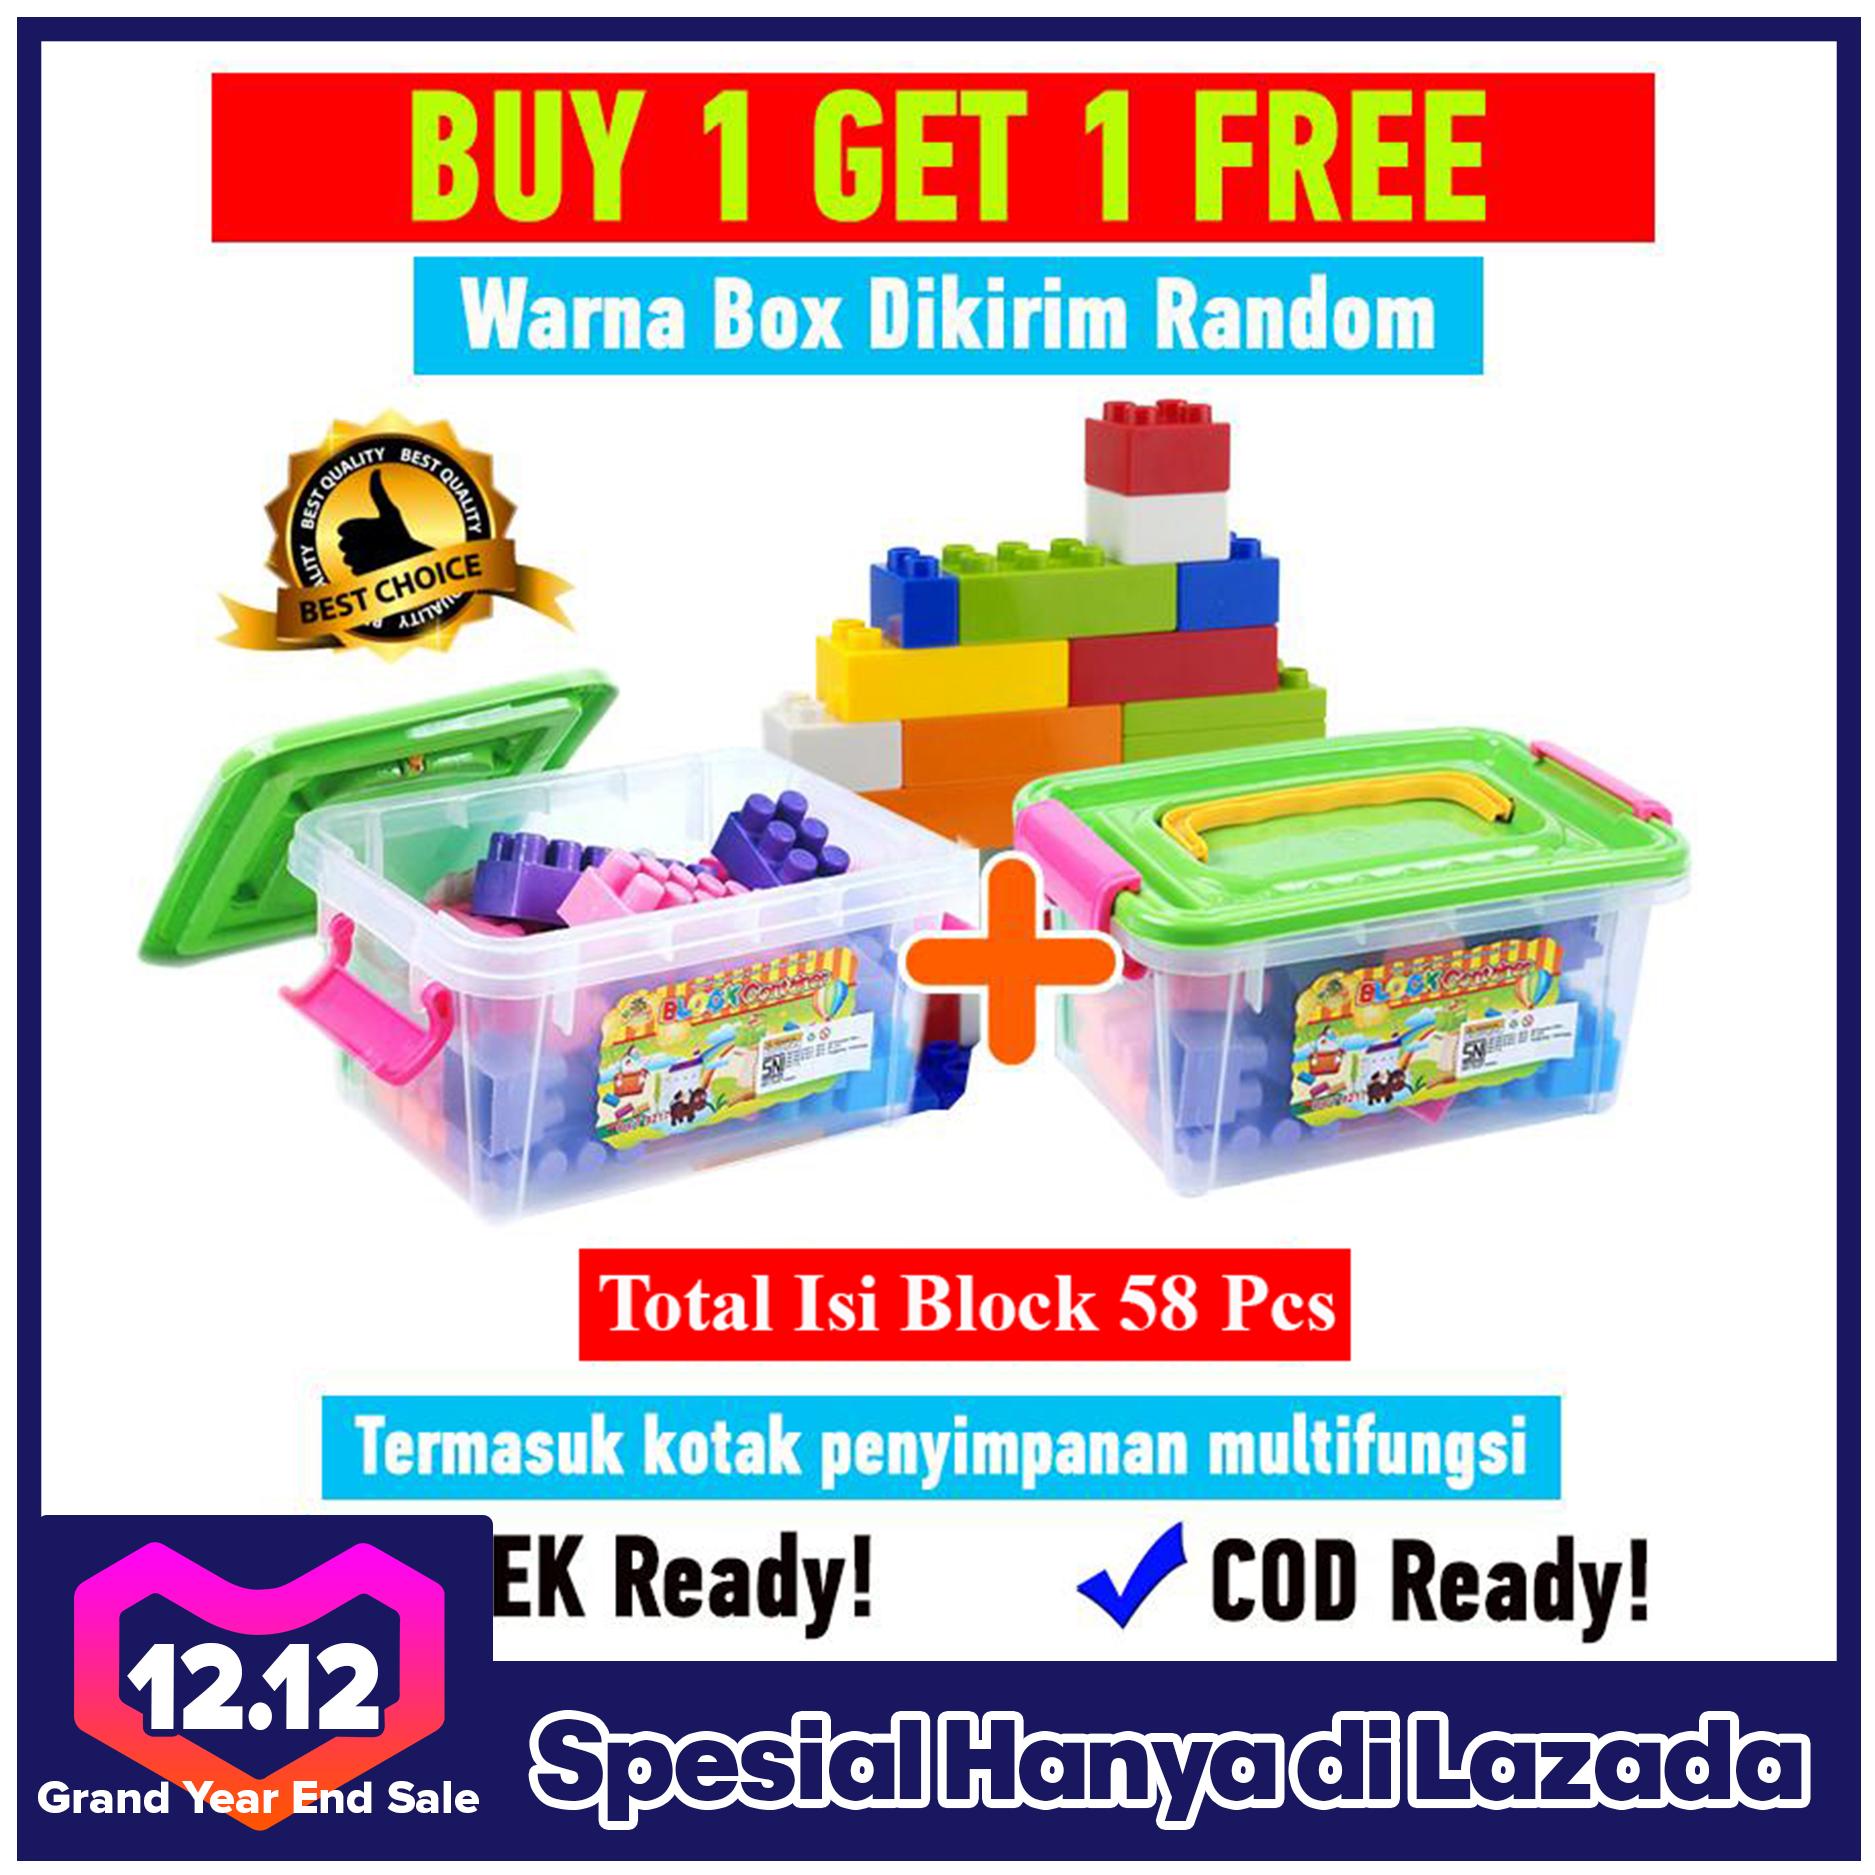 Promo Murah Buy 1 Get 1 Free Mainan Blok Lengkap Dengan Tempat Penyimpanan Mewah Cocok Untuk Anak 3 Tahun Keatas Oct9217 Warna Dikirim Random Lazada Indonesia